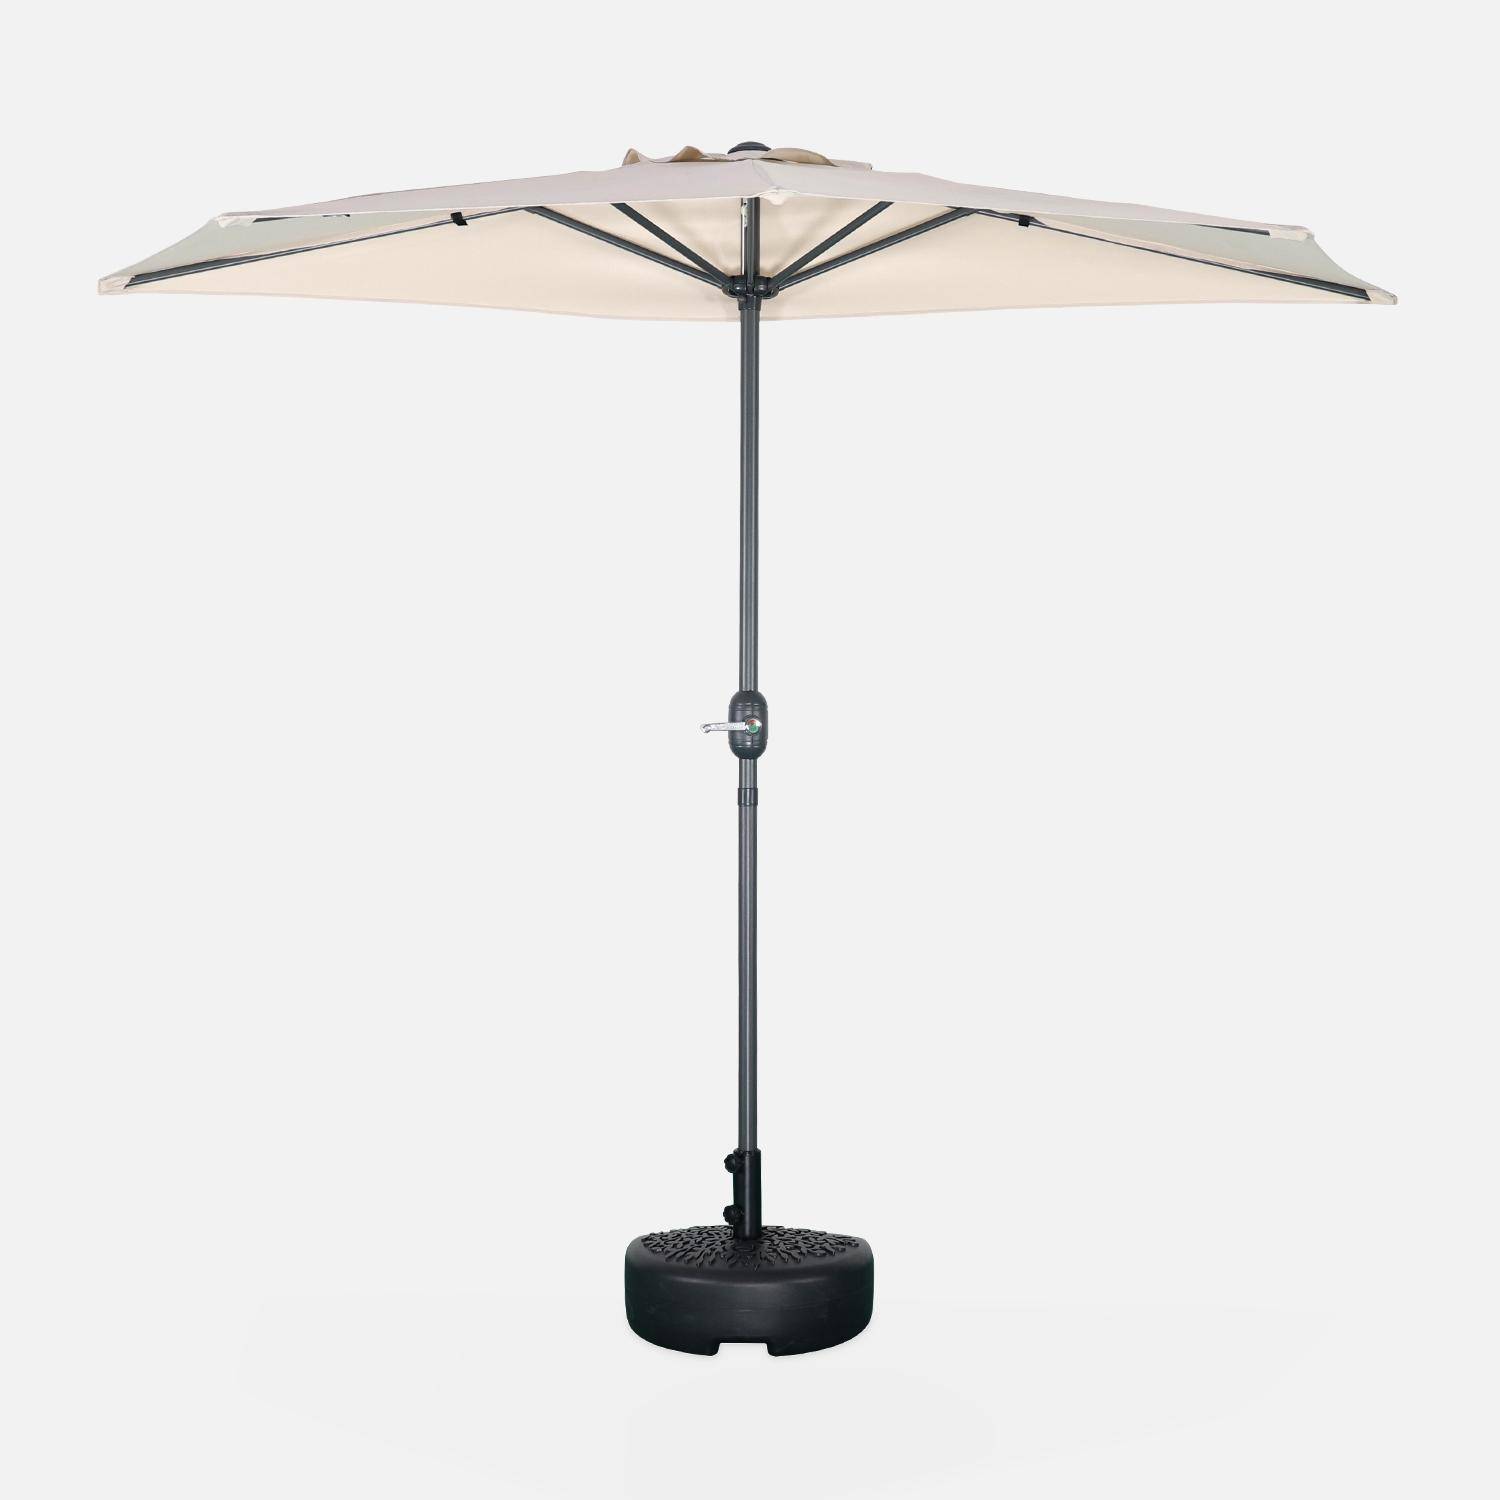 Ombrellone da balcone Ø250cm - CALVI - Mezzo ombrellone dritto, palo in alluminio con manovella, telo colore sabbia Photo2